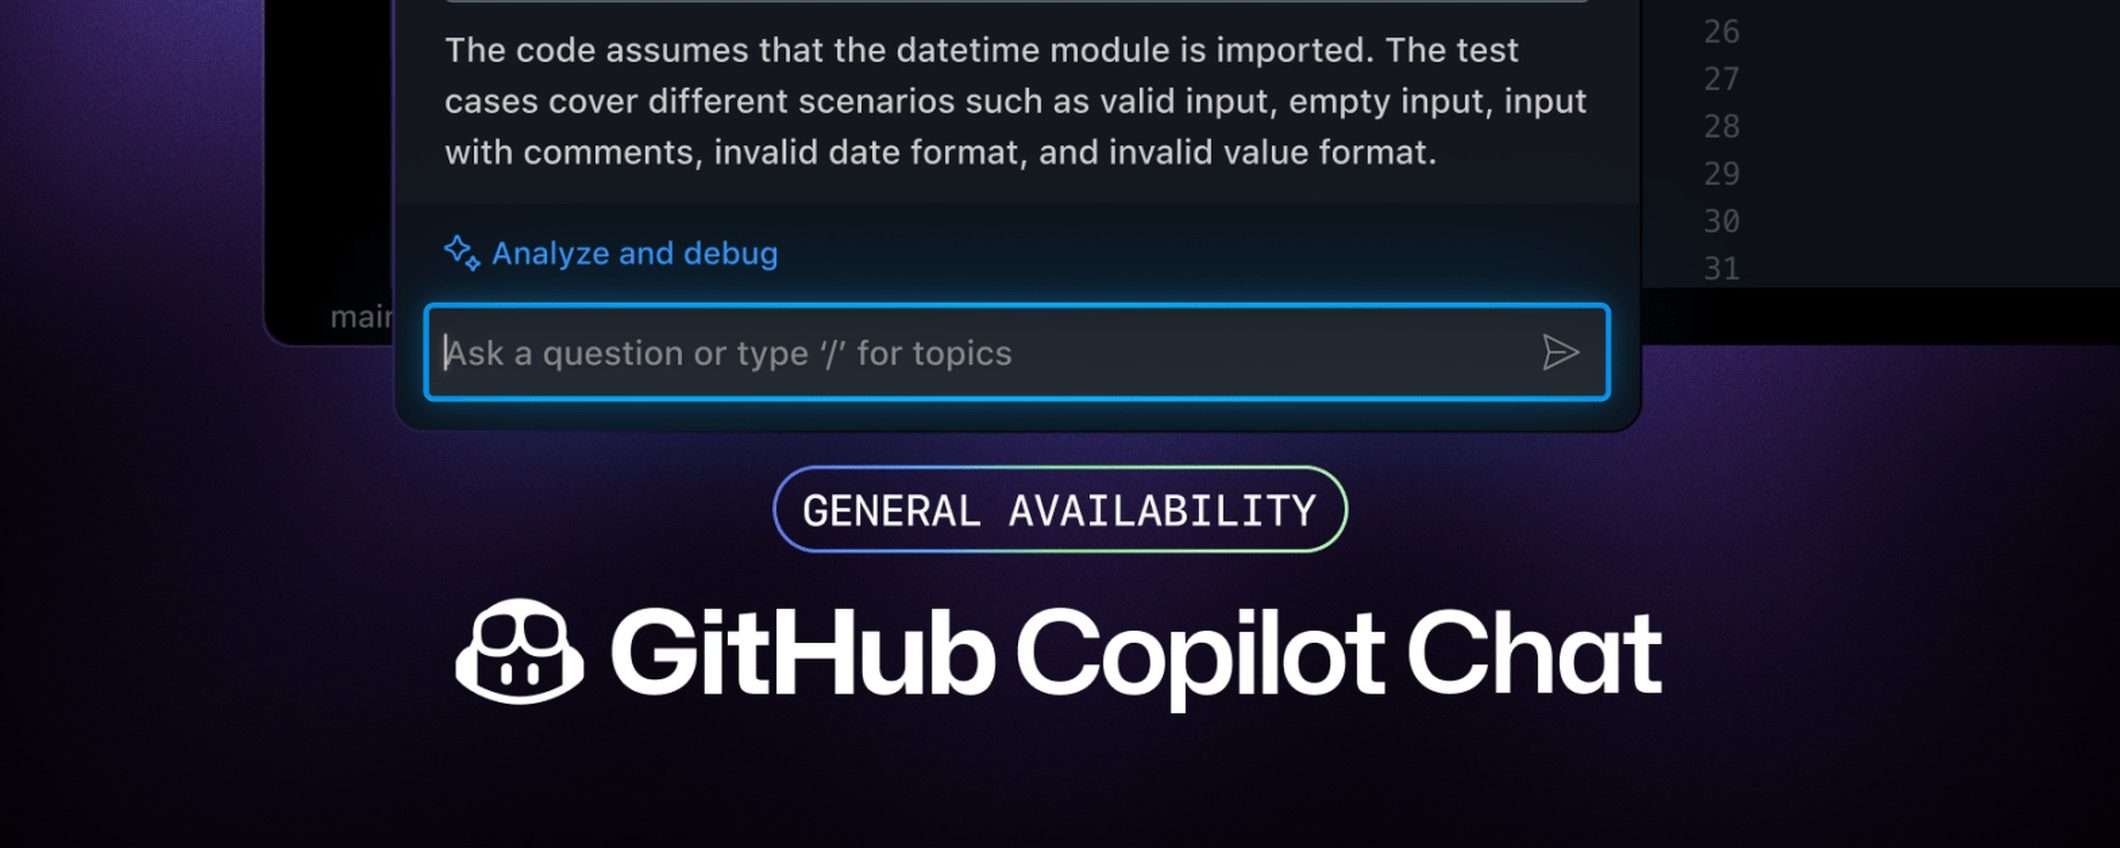 GitHub Copilot Chat disponibile per tutti (anche gratis)